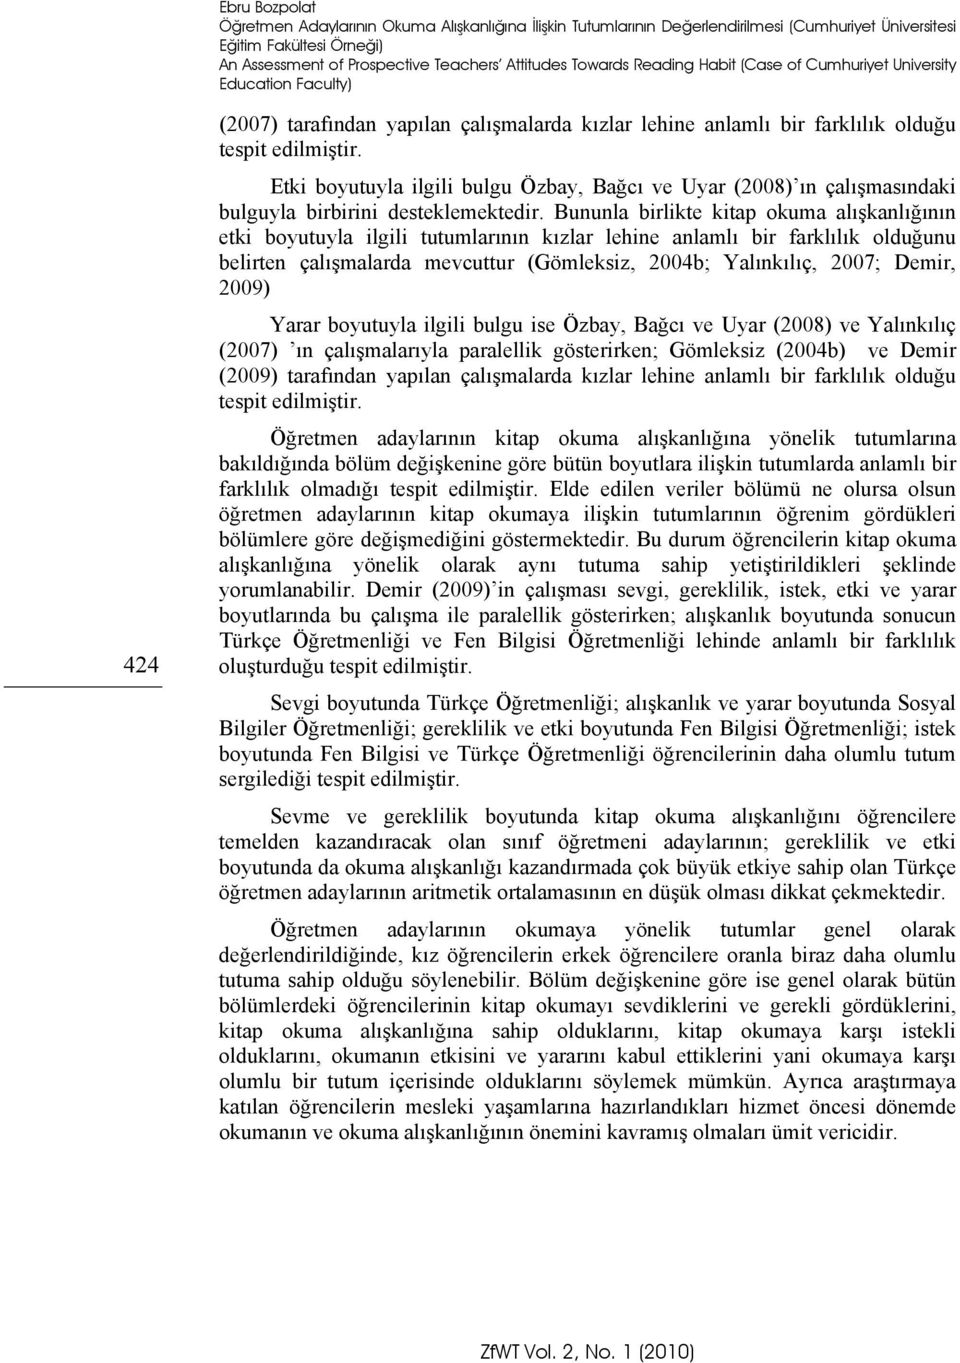 Etki boyutuyla ilgili bulgu Özbay, Bağcı ve Uyar (2008) ın çalışmasındaki bulguyla birbirini desteklemektedir.